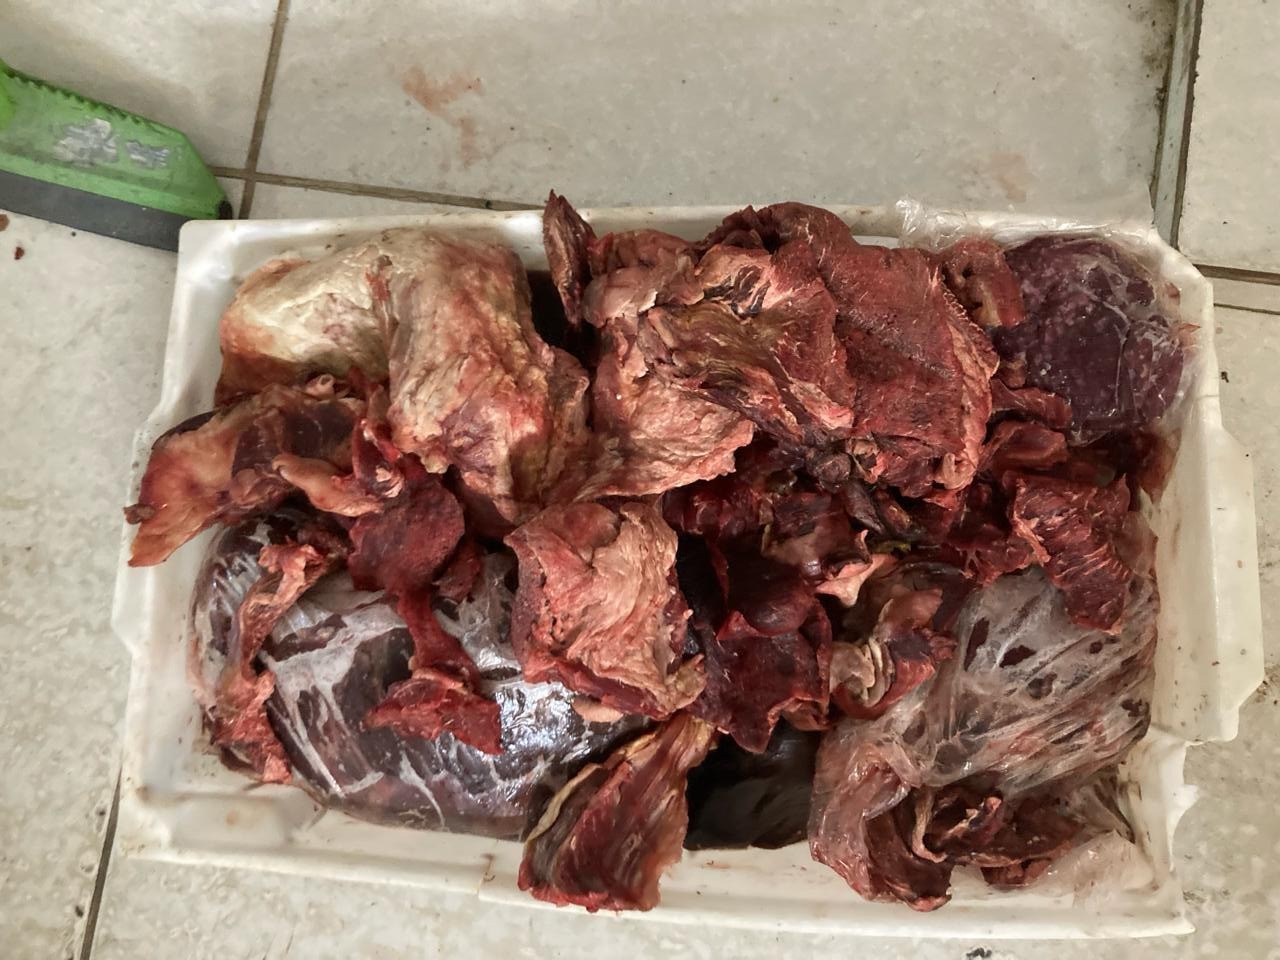 Vigilância Sanitária apreende 110 kg de carnes vencidas em mercadinho na Jatiúca, Maceió